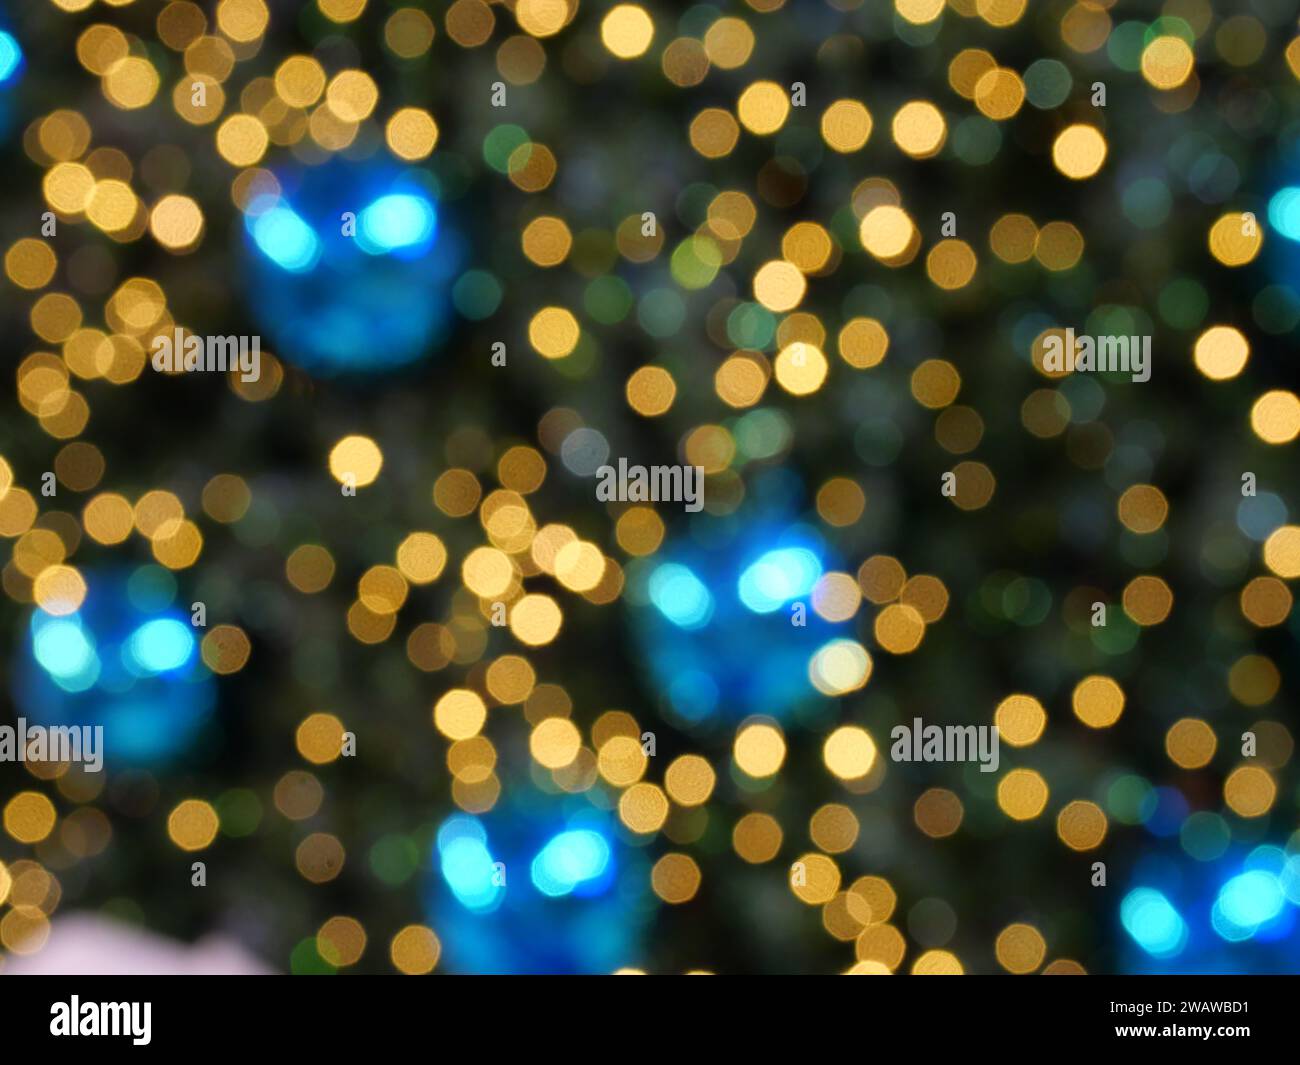 Círculos azules y amarillos se extienden en la superficie de color verde y negro, fondo de luz de la ciudad de la noche para la celebración de la temporada de vacaciones Foto de stock